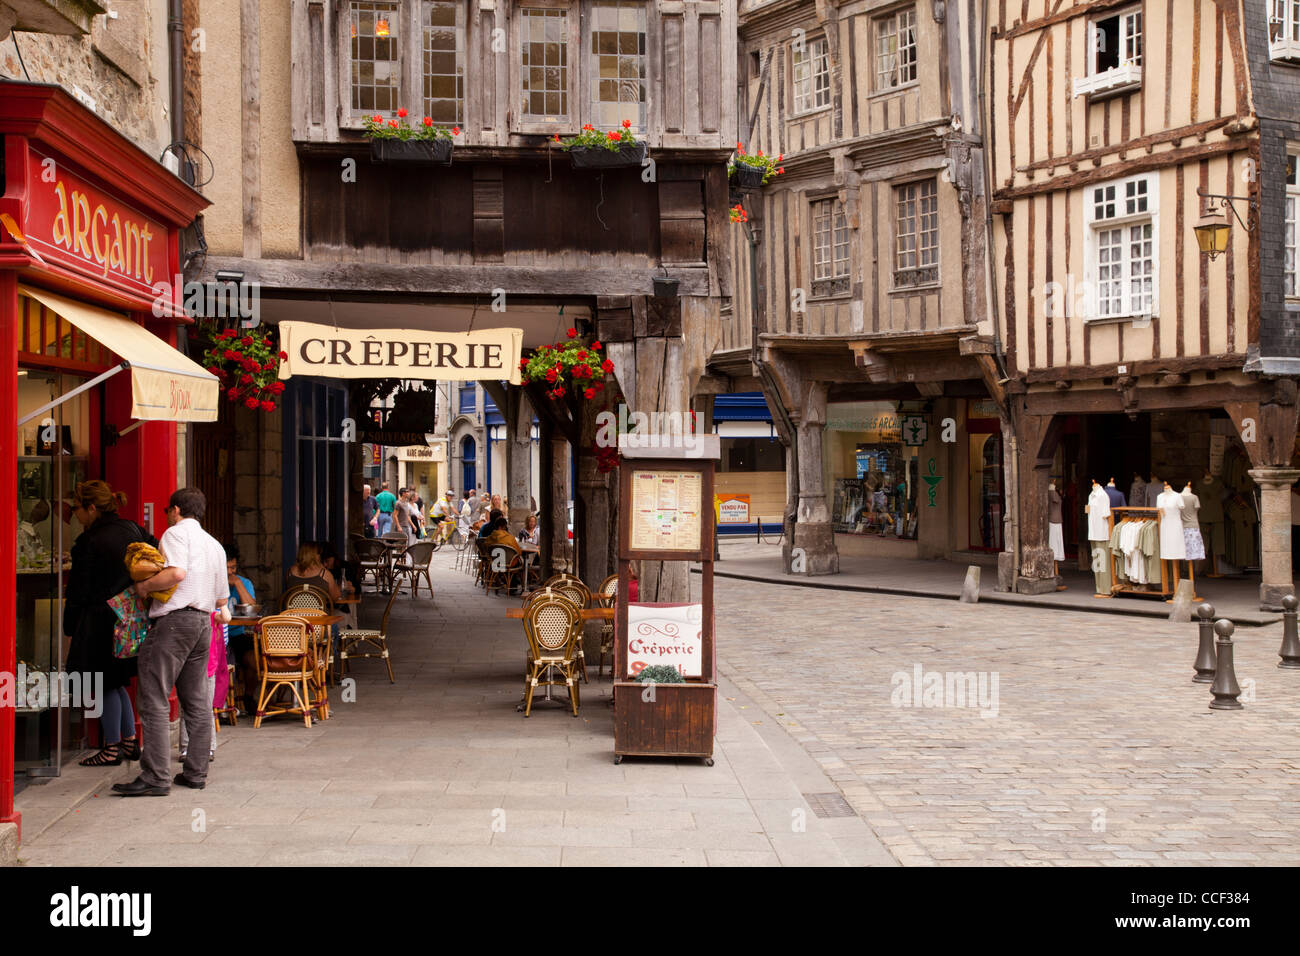 Geschäfte, Restaurants und eine halbe Fachwerkhaus Gebäude im mittelalterlichen Zentrum von Dinan, Bretagne, Frankreich. Stockfoto